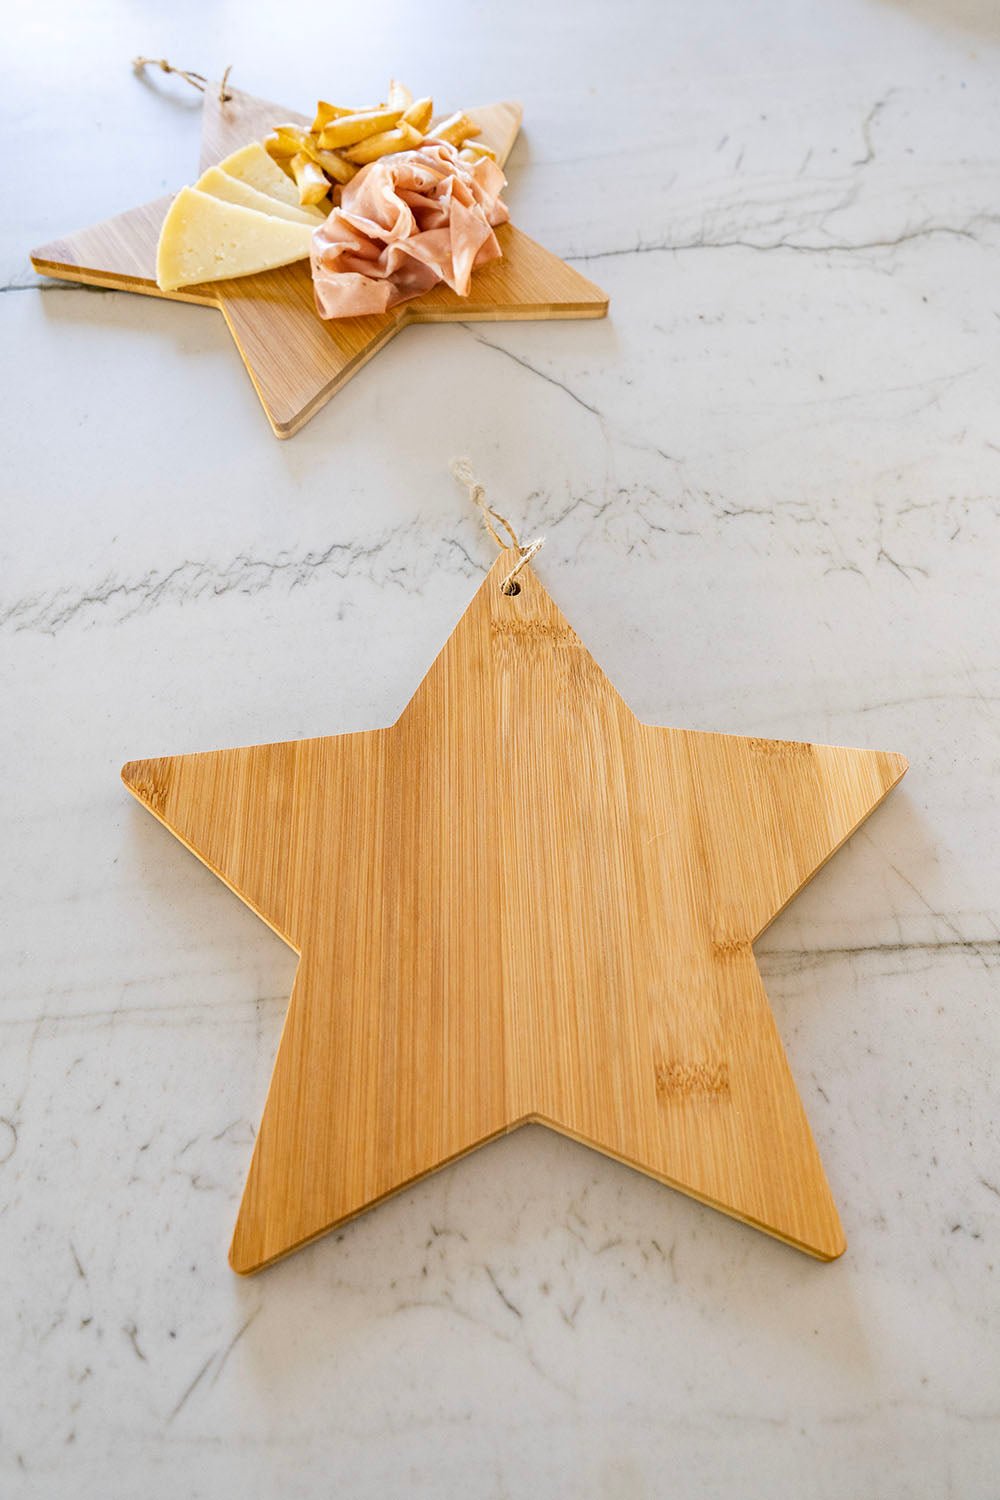 Tabla De Bambú Con Diseño De Estrella - Cristina Oria